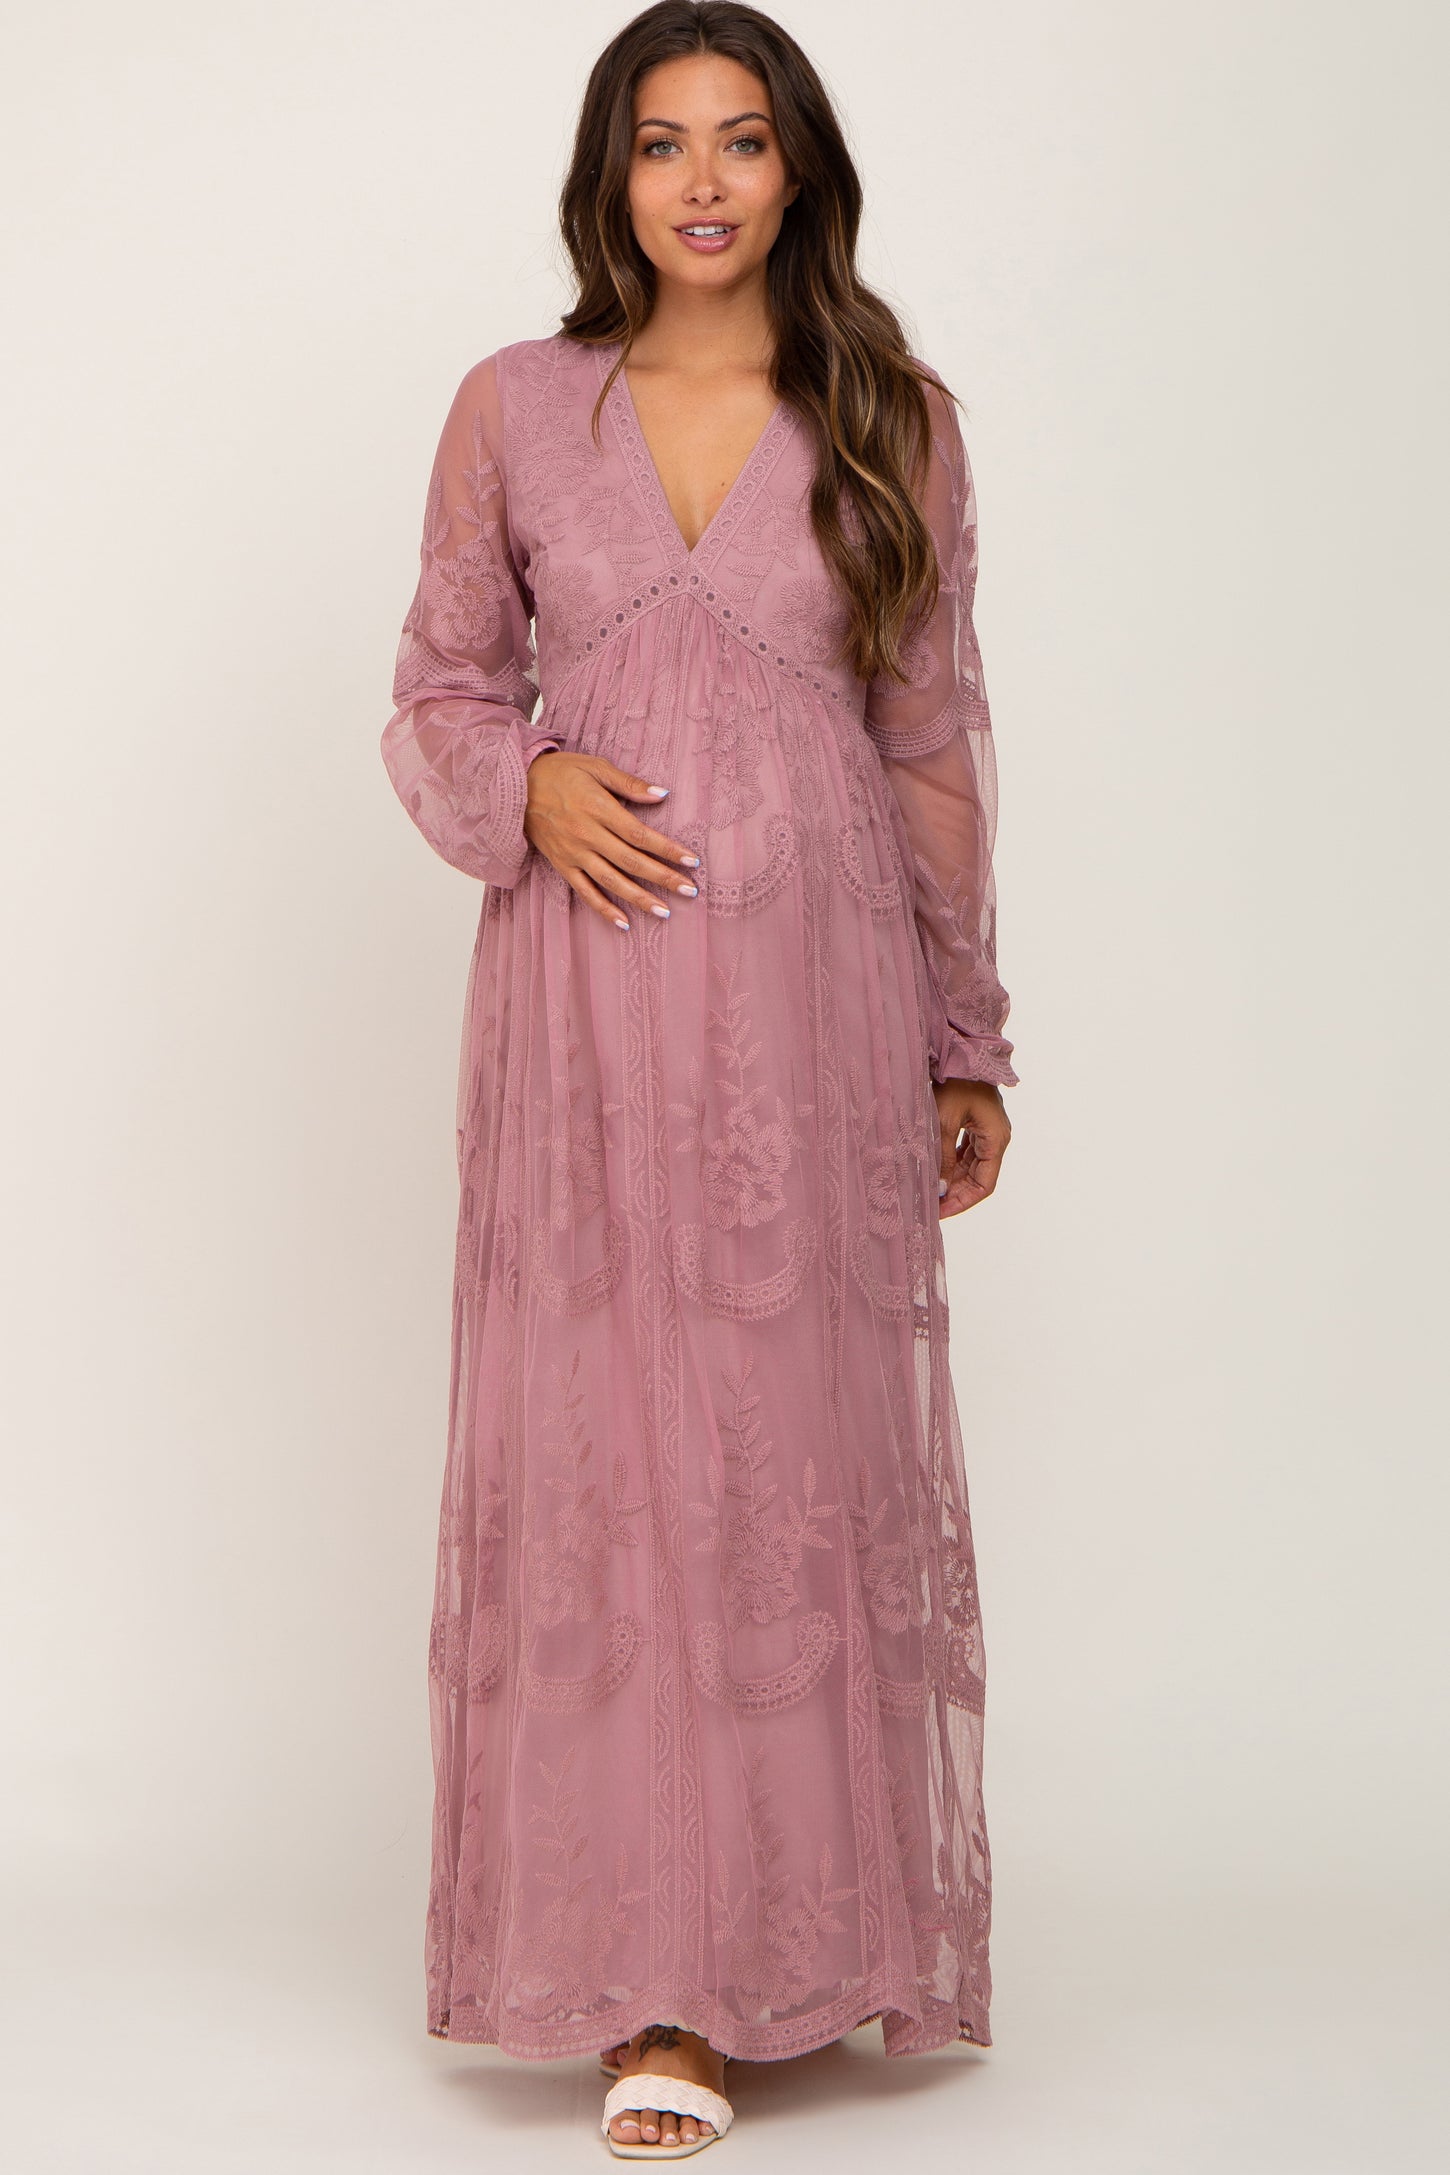 PinkBlush Plum Lace Mesh Overlay Maternity Maxi Dress